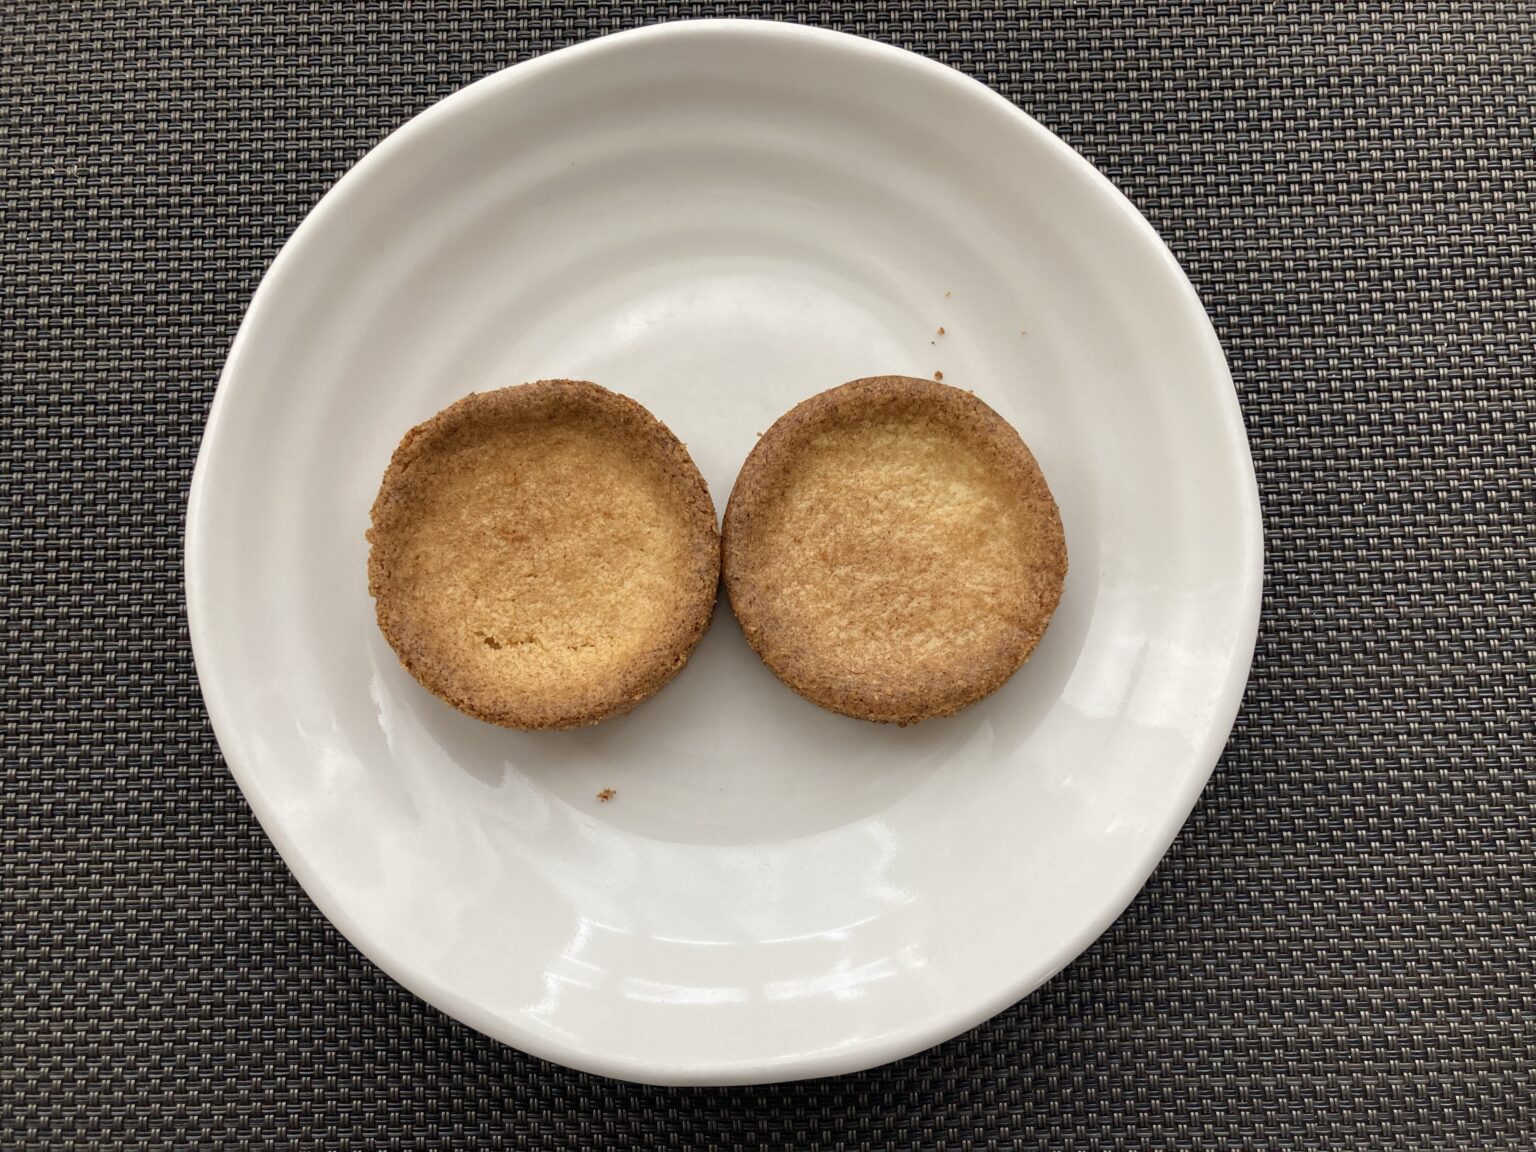 【レシピあり】エシレクッキー缶購入、エシレと四つ葉でクッキー比較してみました | お菓子教室petit à petitのお菓子のブログ